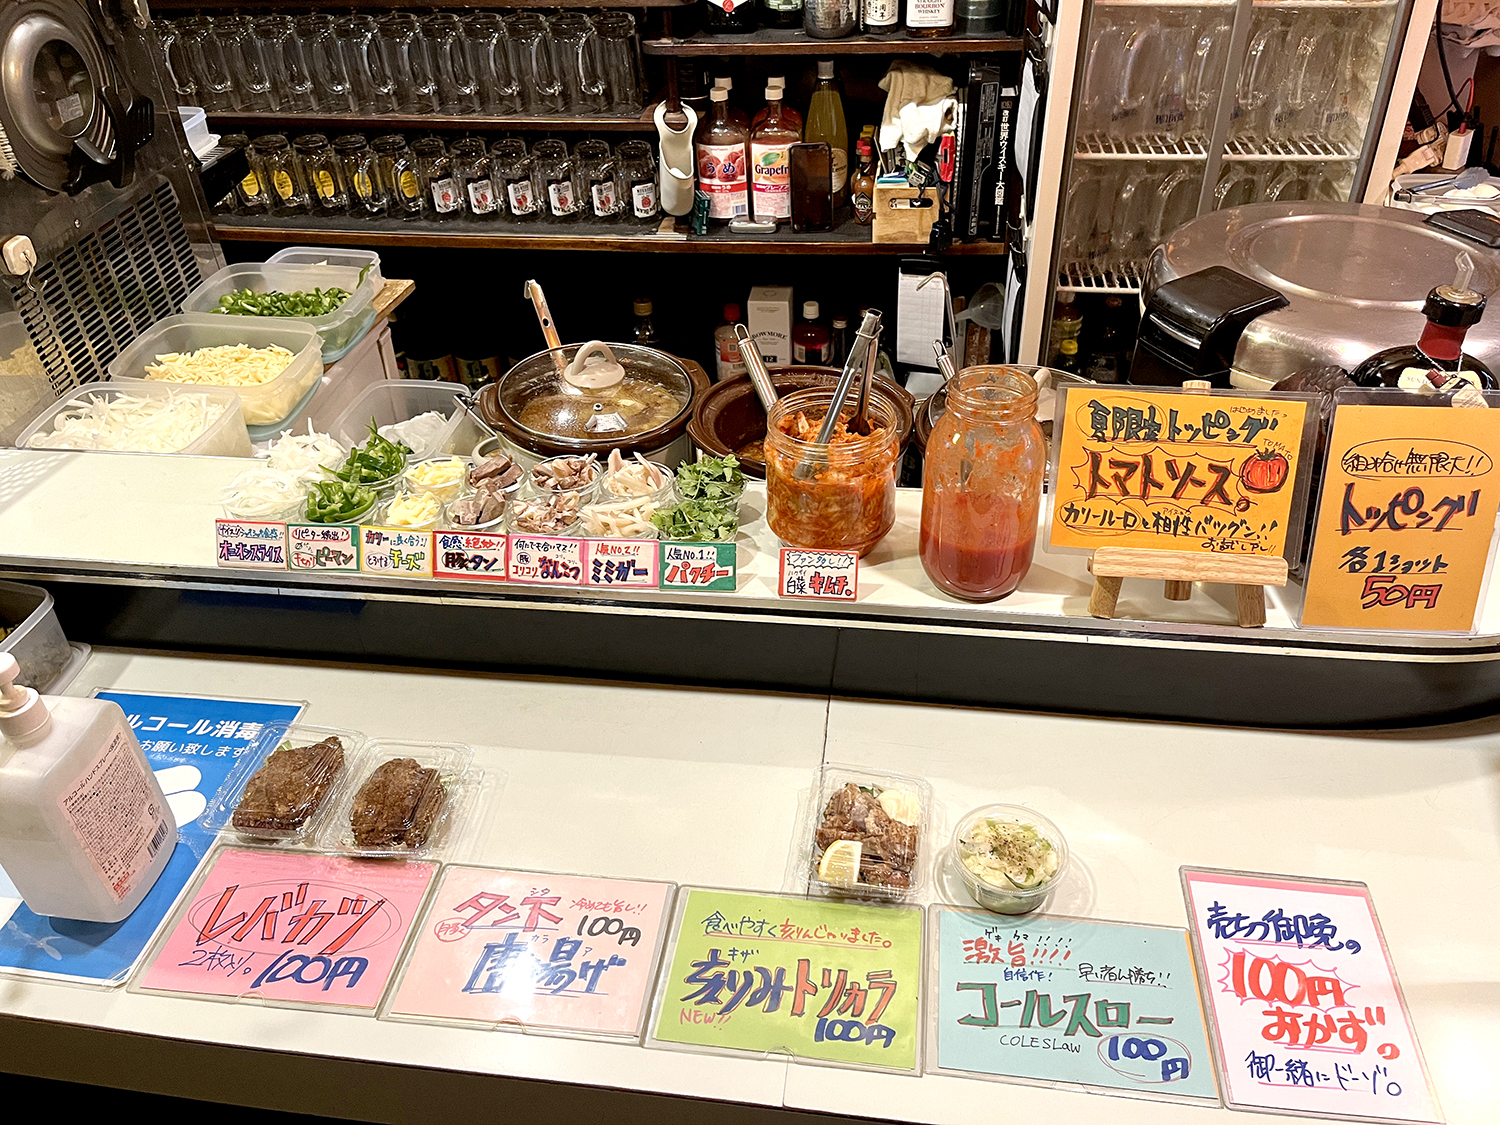 プラス50円でパクチーやチーズなどのトッピングが可能。1つ100円のおかずもある。